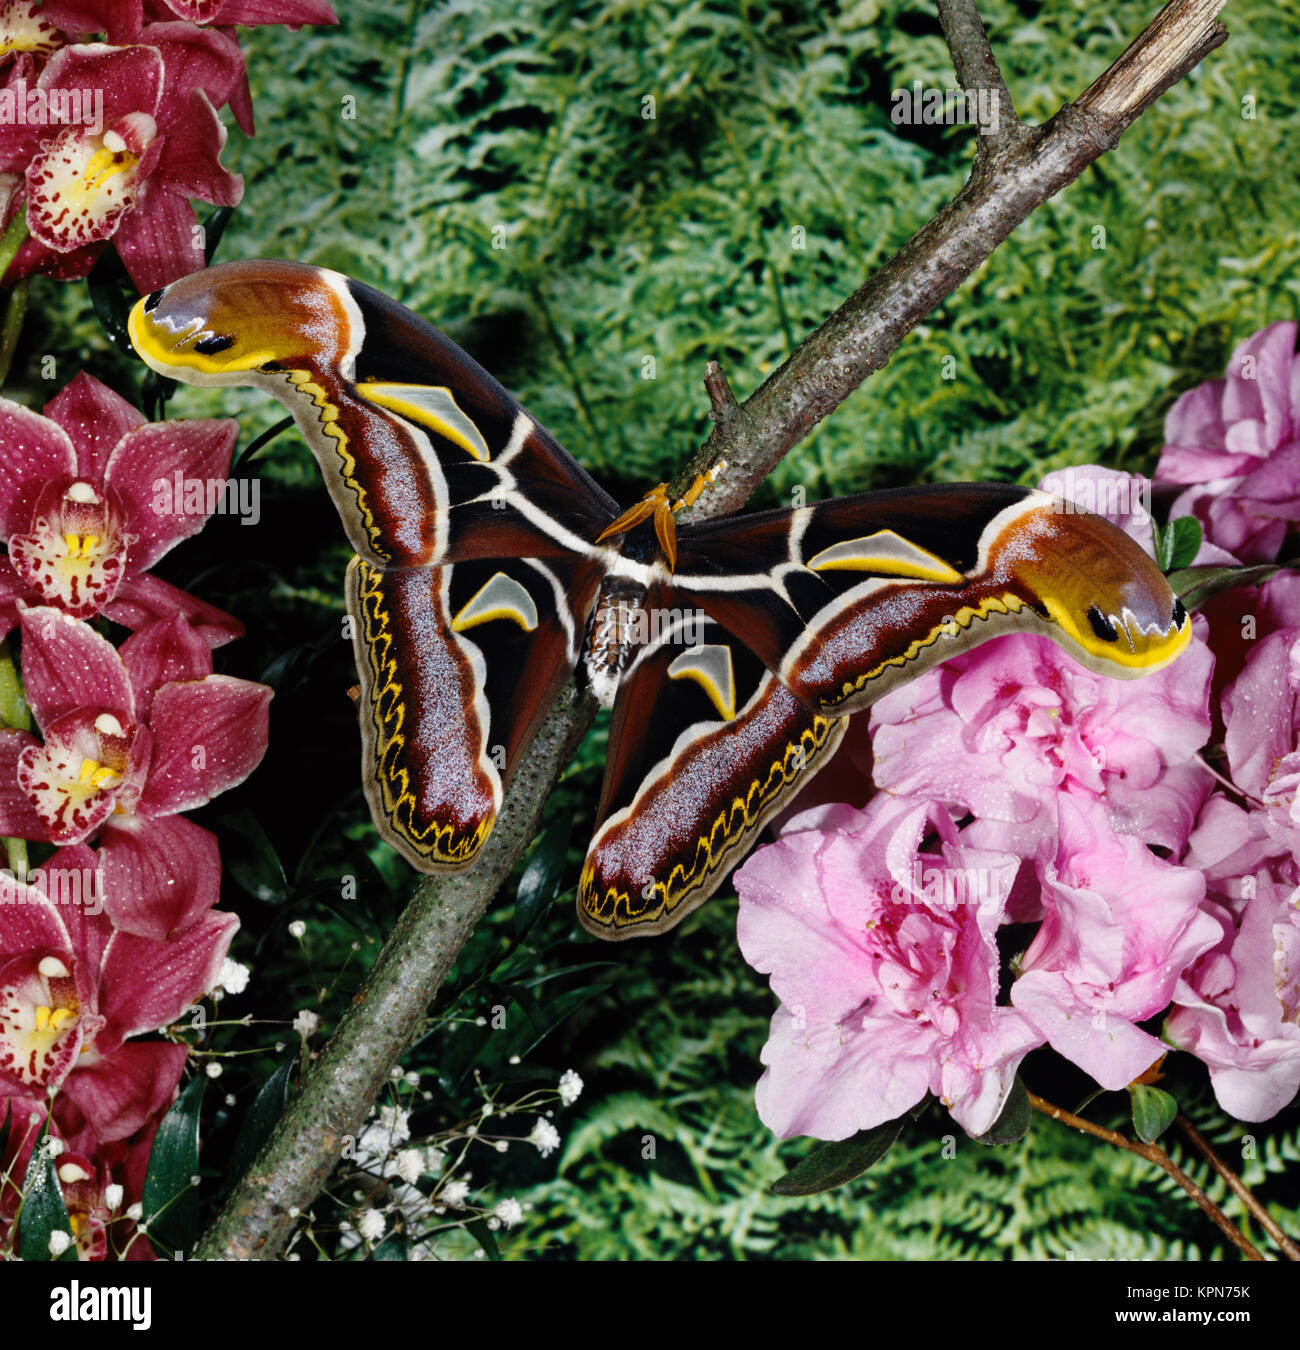 Atlasfalter, Attacus edwardsii, Nachtfalter, einer der größten Schmetterlinge der Erde, Spannweite bis über 250 mm, männlicher, Flügelspitzen imitieren Falter die Schlangen- köpfe, zur Abwehr von Fressfeinden. Dans Tälern suis Himalaja und Nordindien. Banque D'Images